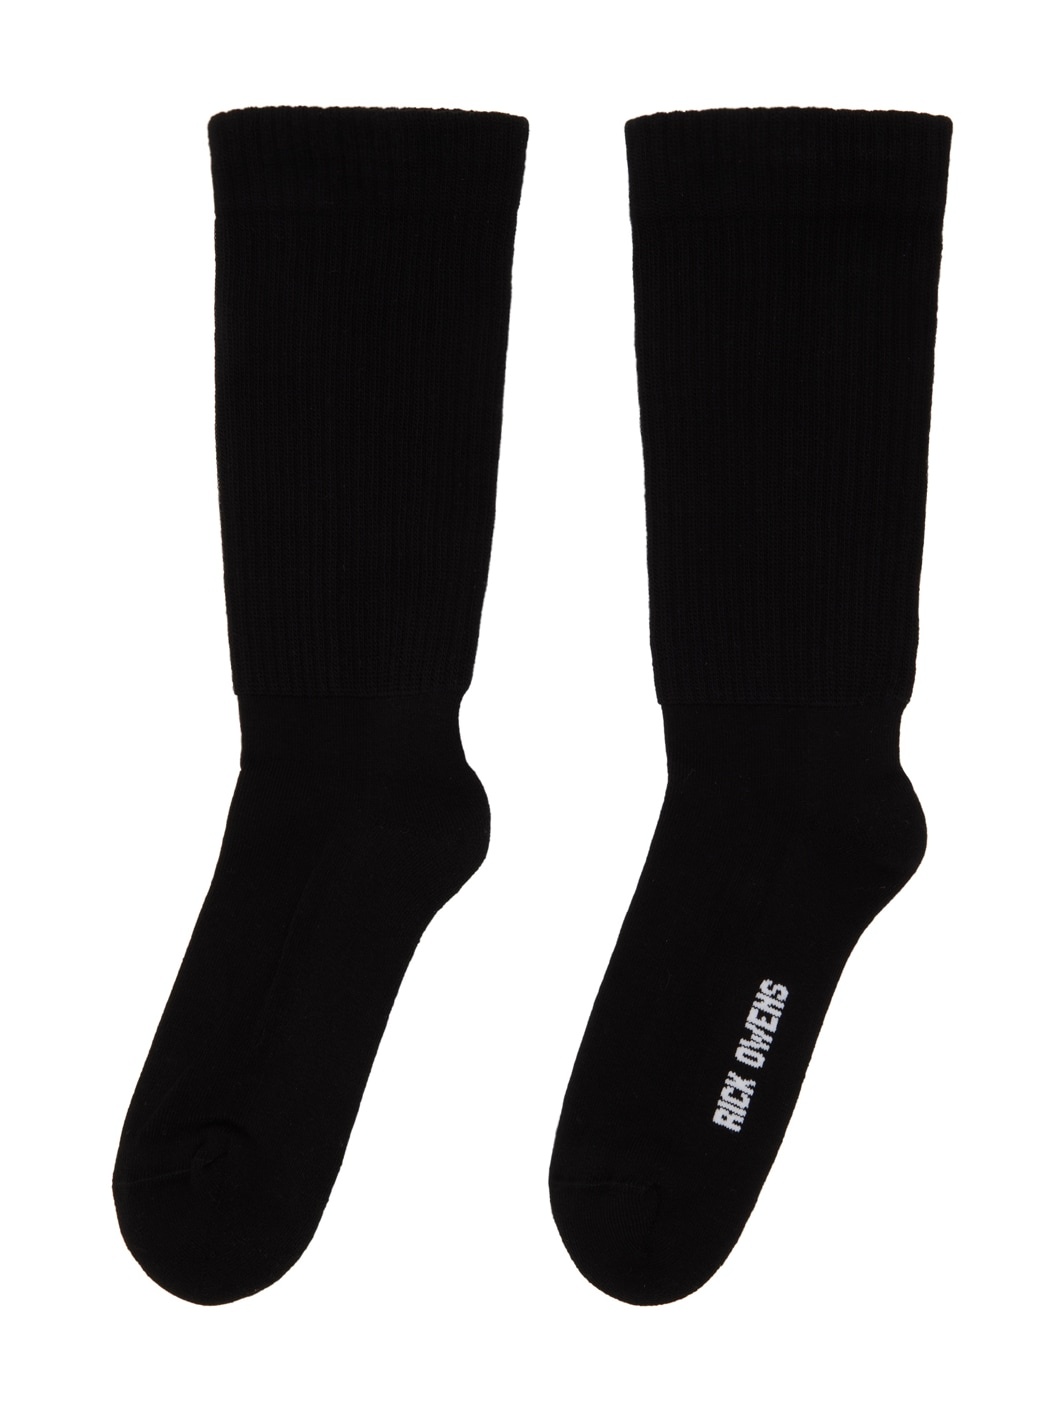 Black Mid Calf Socks - 2